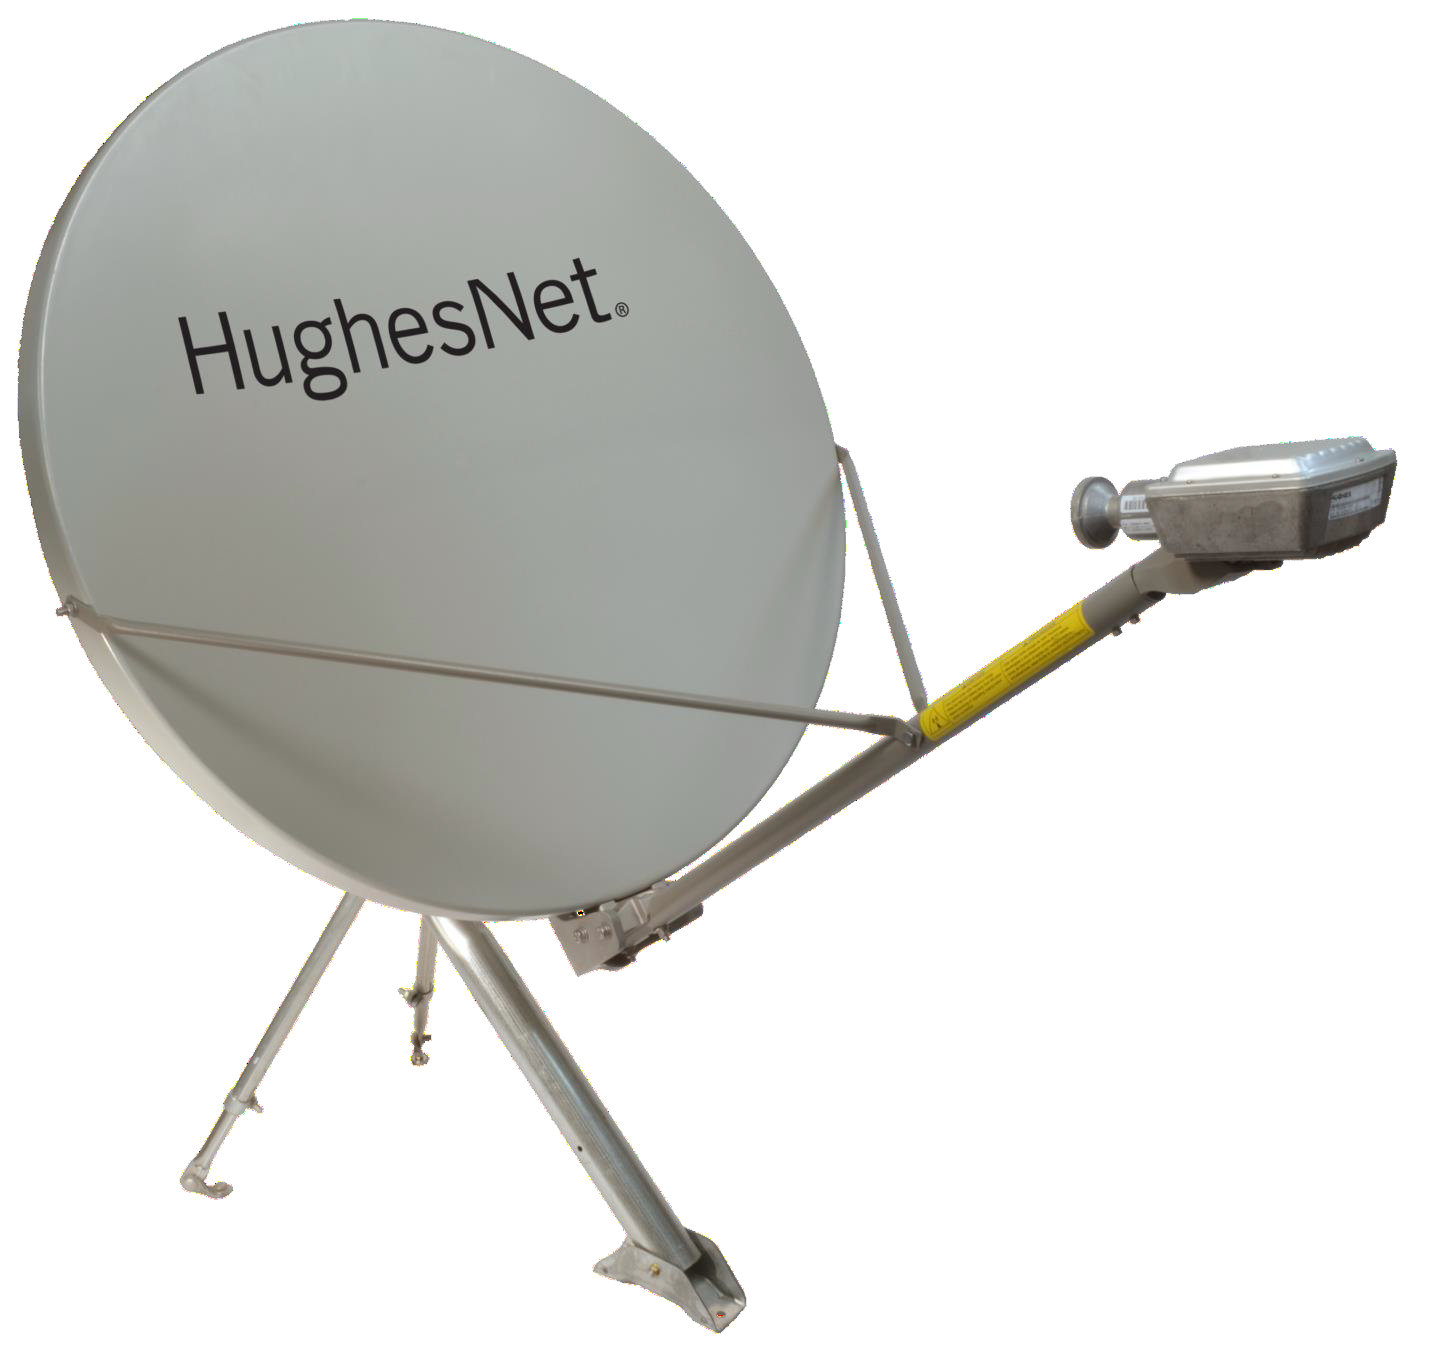 Dish Satellite Internet Deals 51 Off